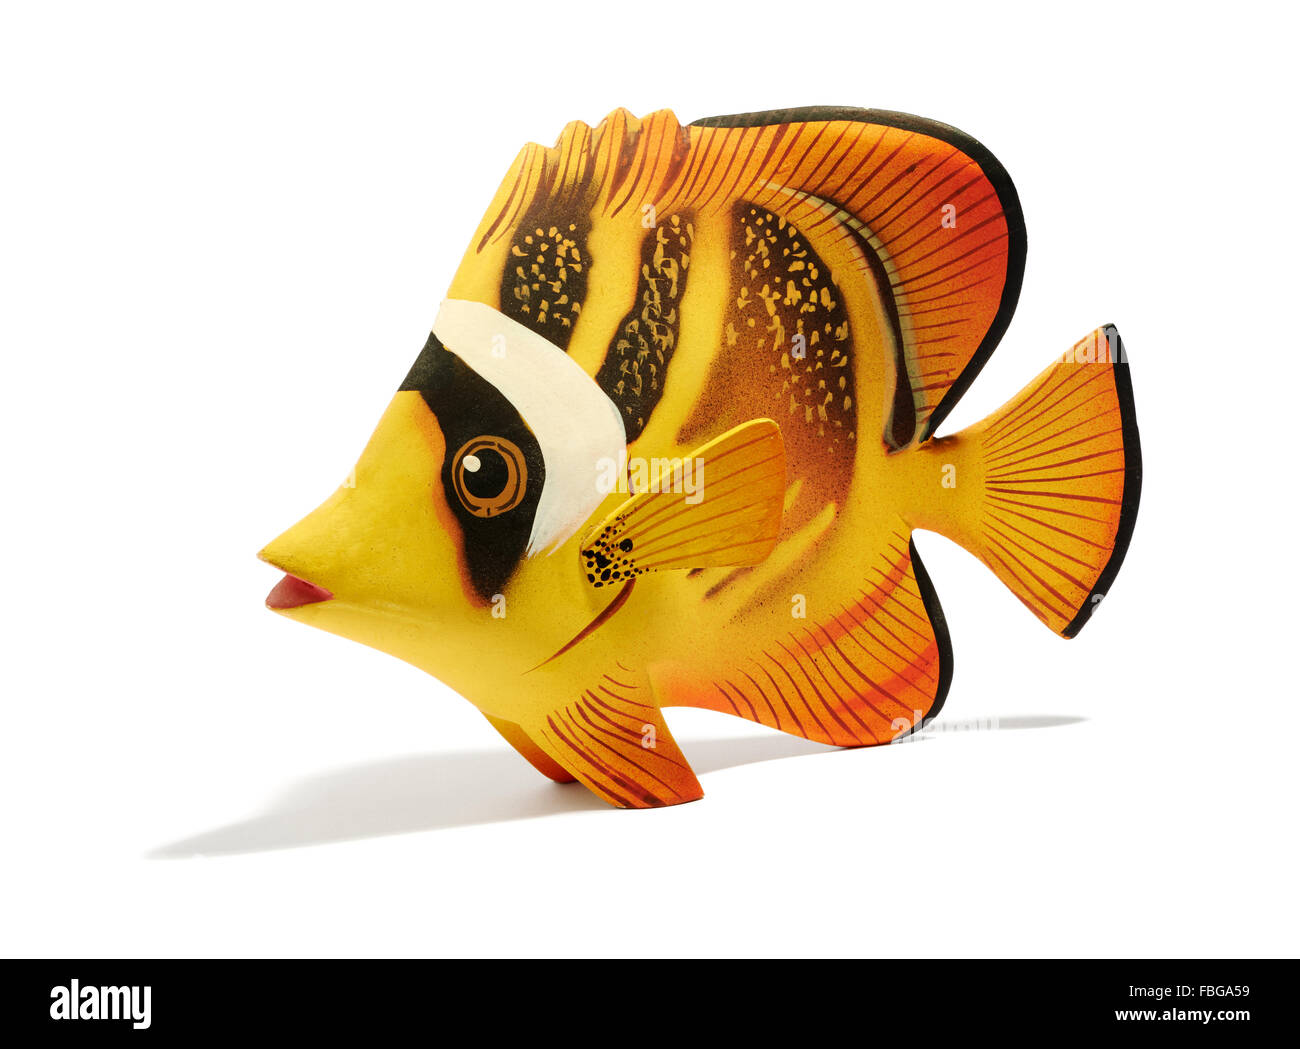 Seul mignon petit poisson exotique en bois modèle jaune sur fond blanc Banque D'Images